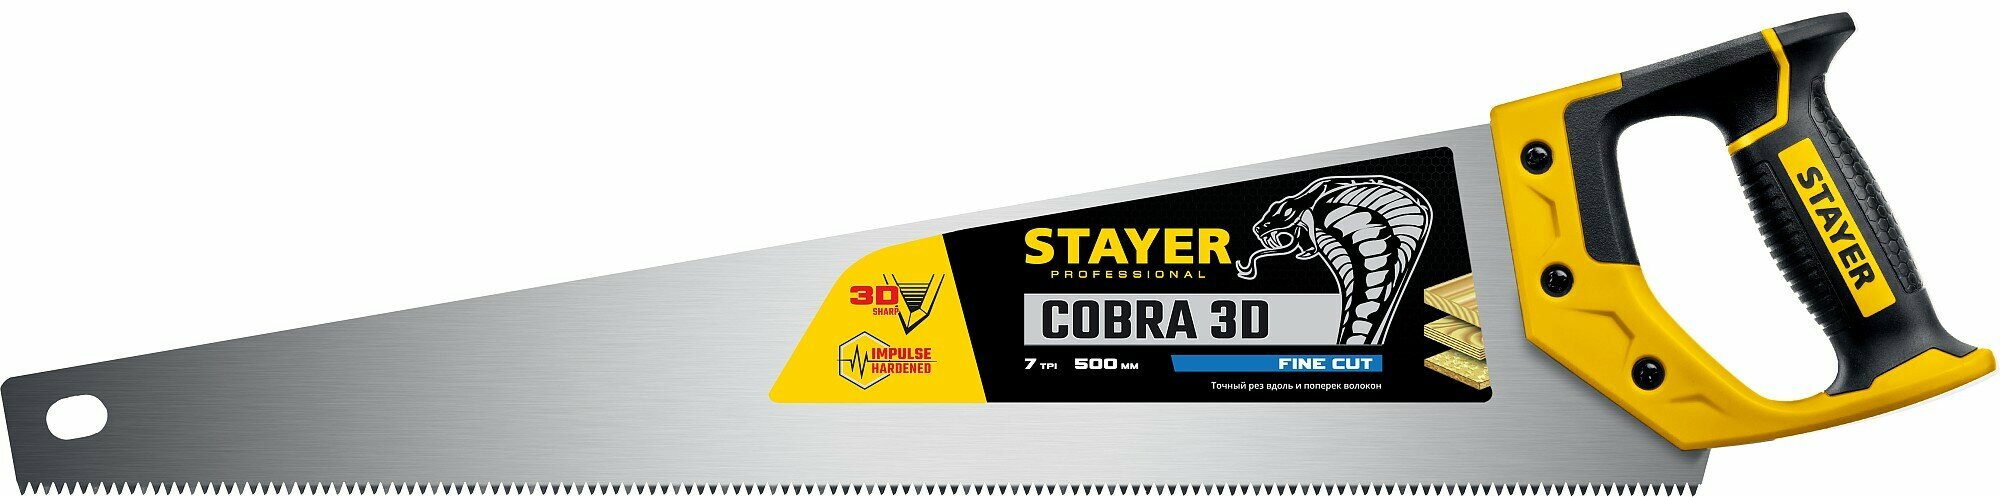 STAYER Cobra 3D, 500 мм, универсальная ножовка, Professional (1512-50)